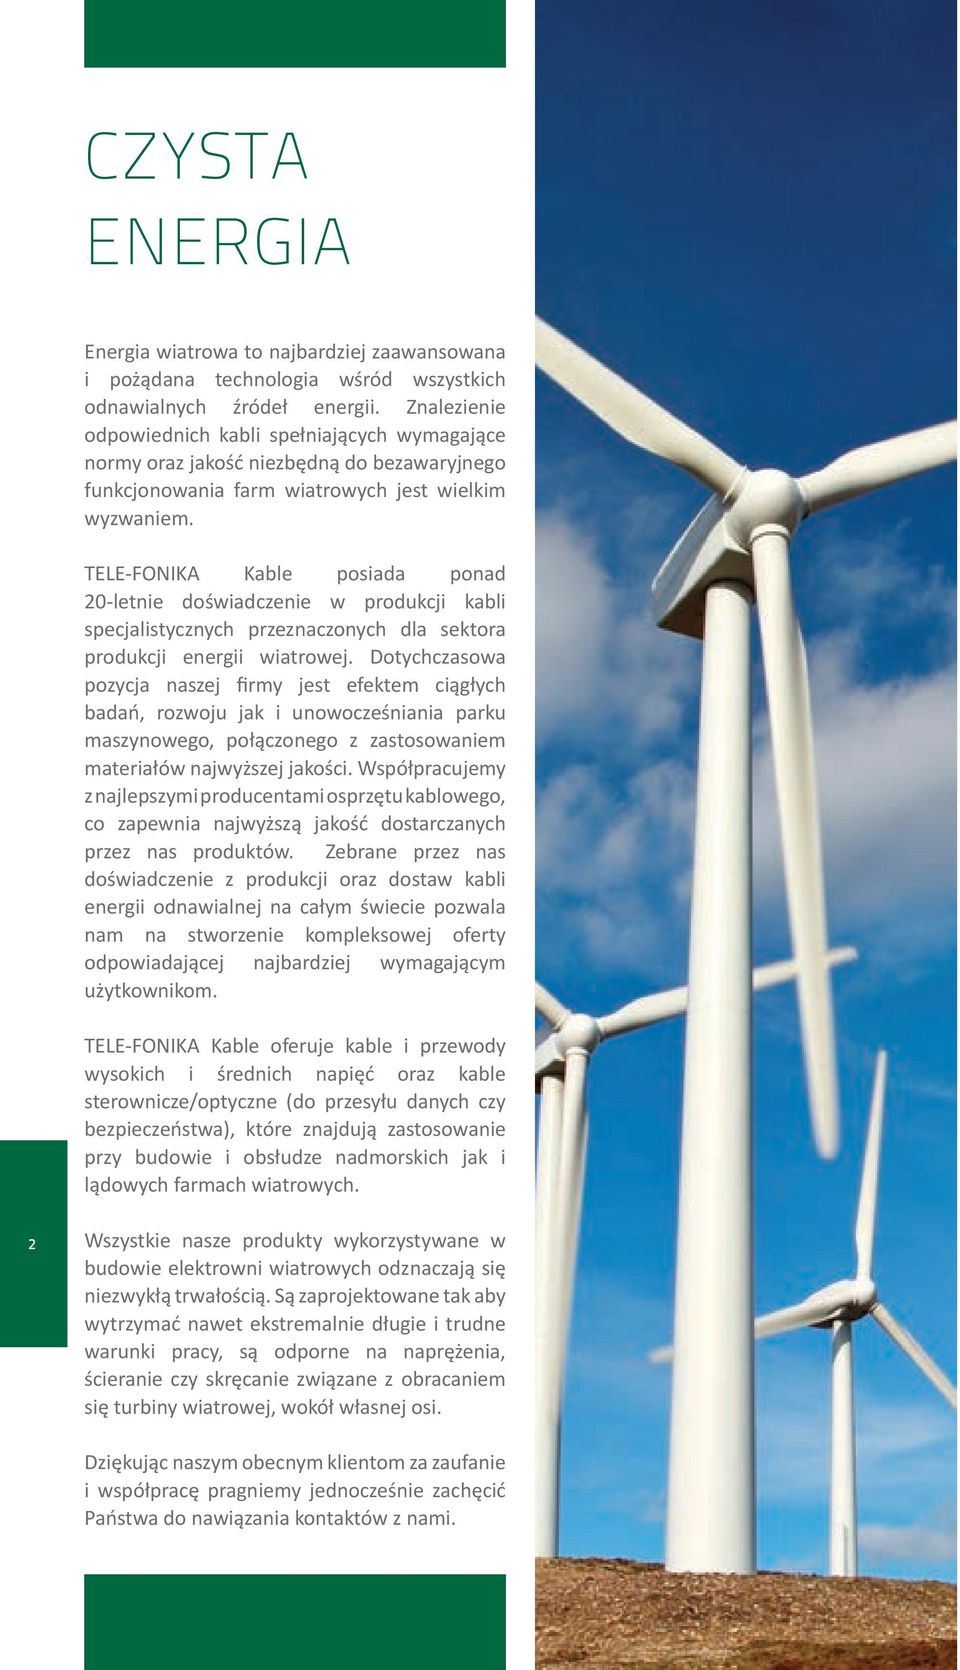 TELE-FONIKA Kable posiada ponad 20-letnie doświadczenie w produkcji kabli specjalistycznych przeznaczonych dla sektora produkcji energii wiatrowej.